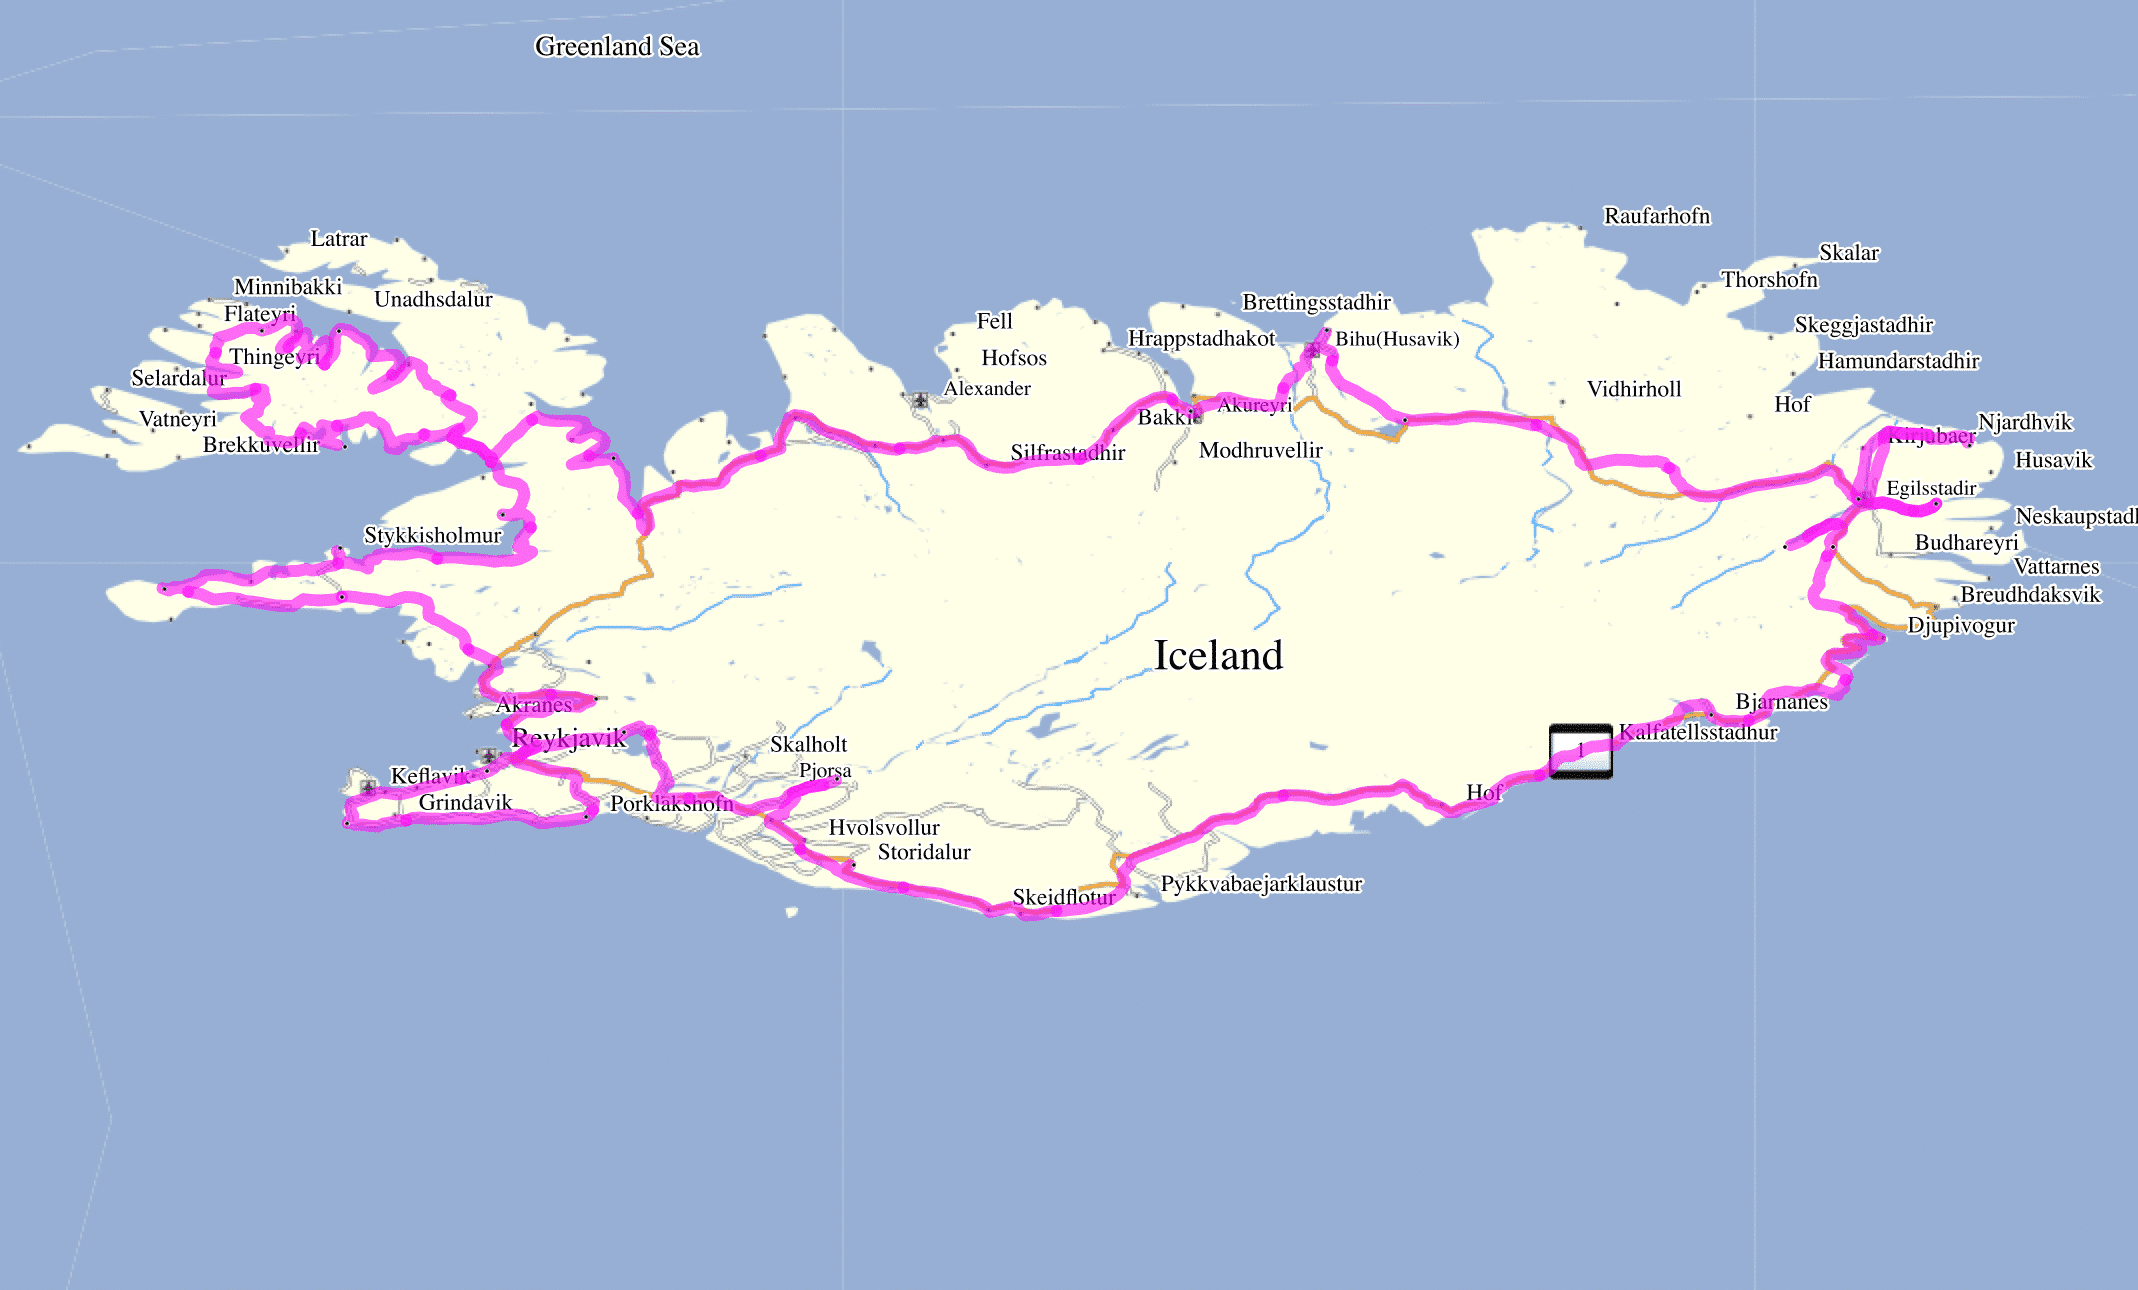 الطريق الكامل لشتاءنا roadtrip بواسطة آيسلندا (الجزء 1 + 2) على الخريطة.